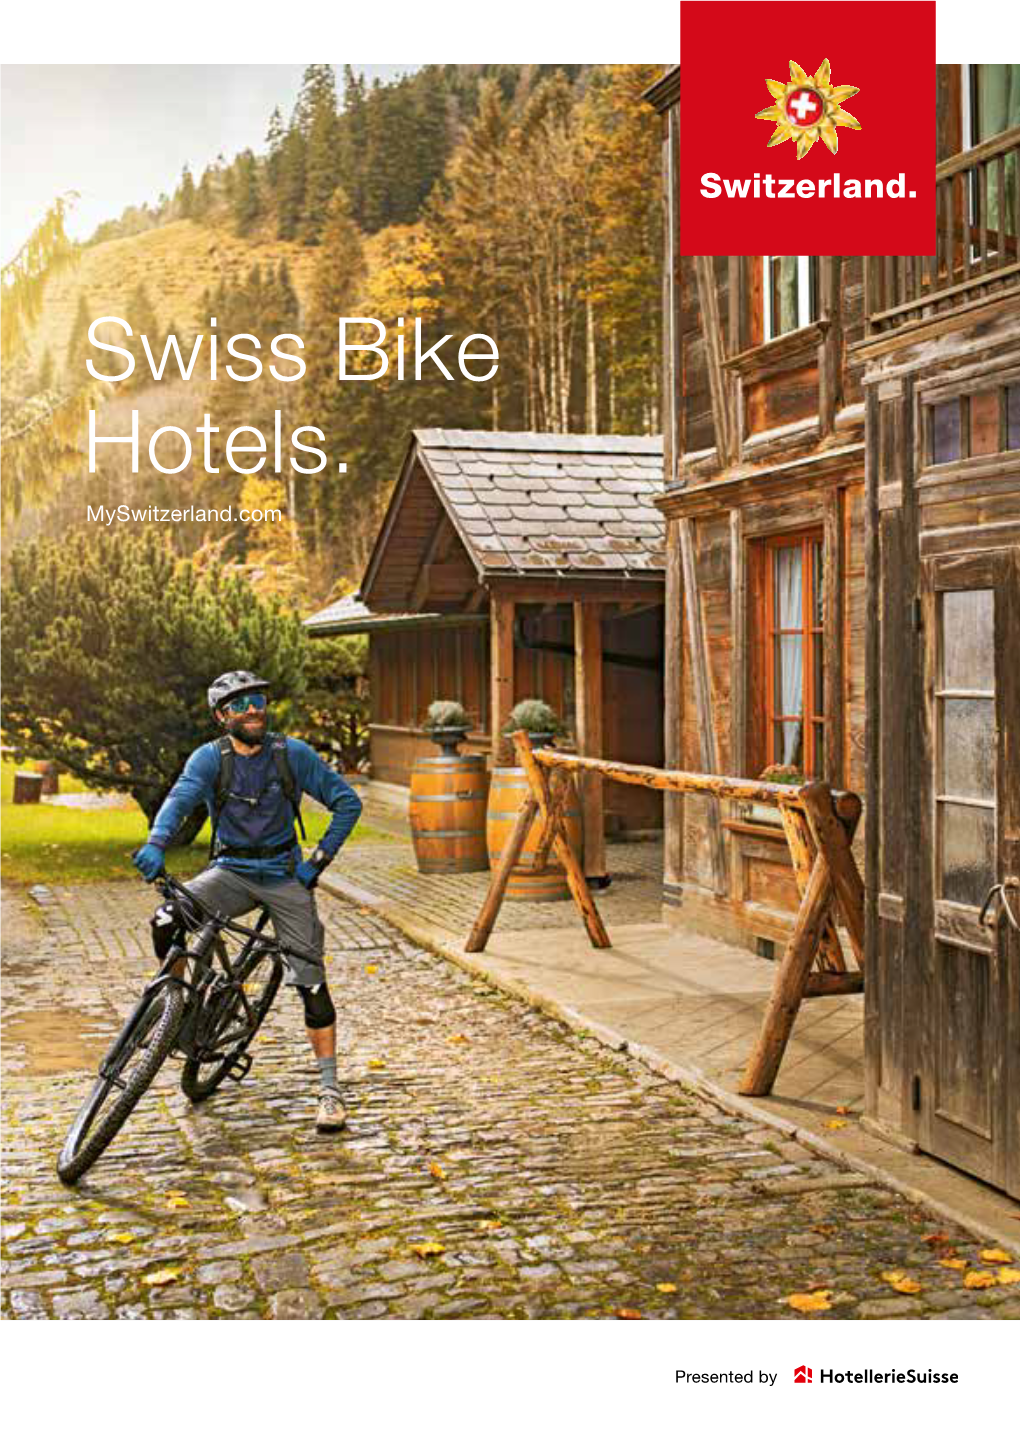 Swiss Bike Hotels